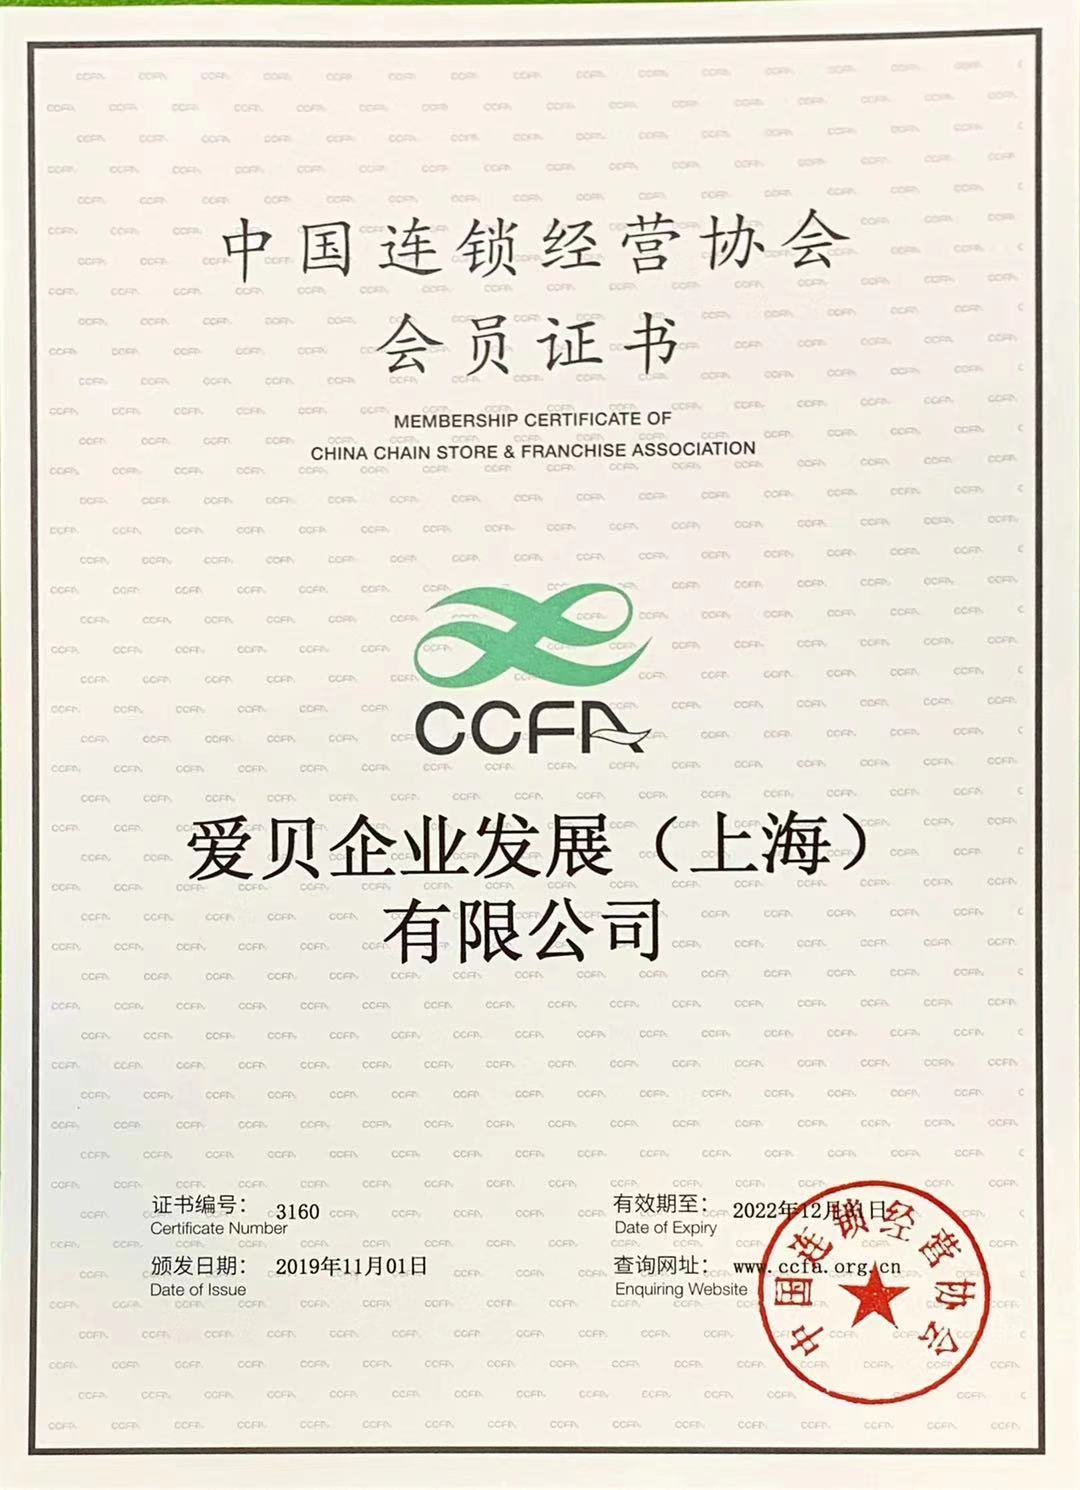 会员证书加入中国连锁经营协会是爱贝品牌发展的一个全新里程碑,在